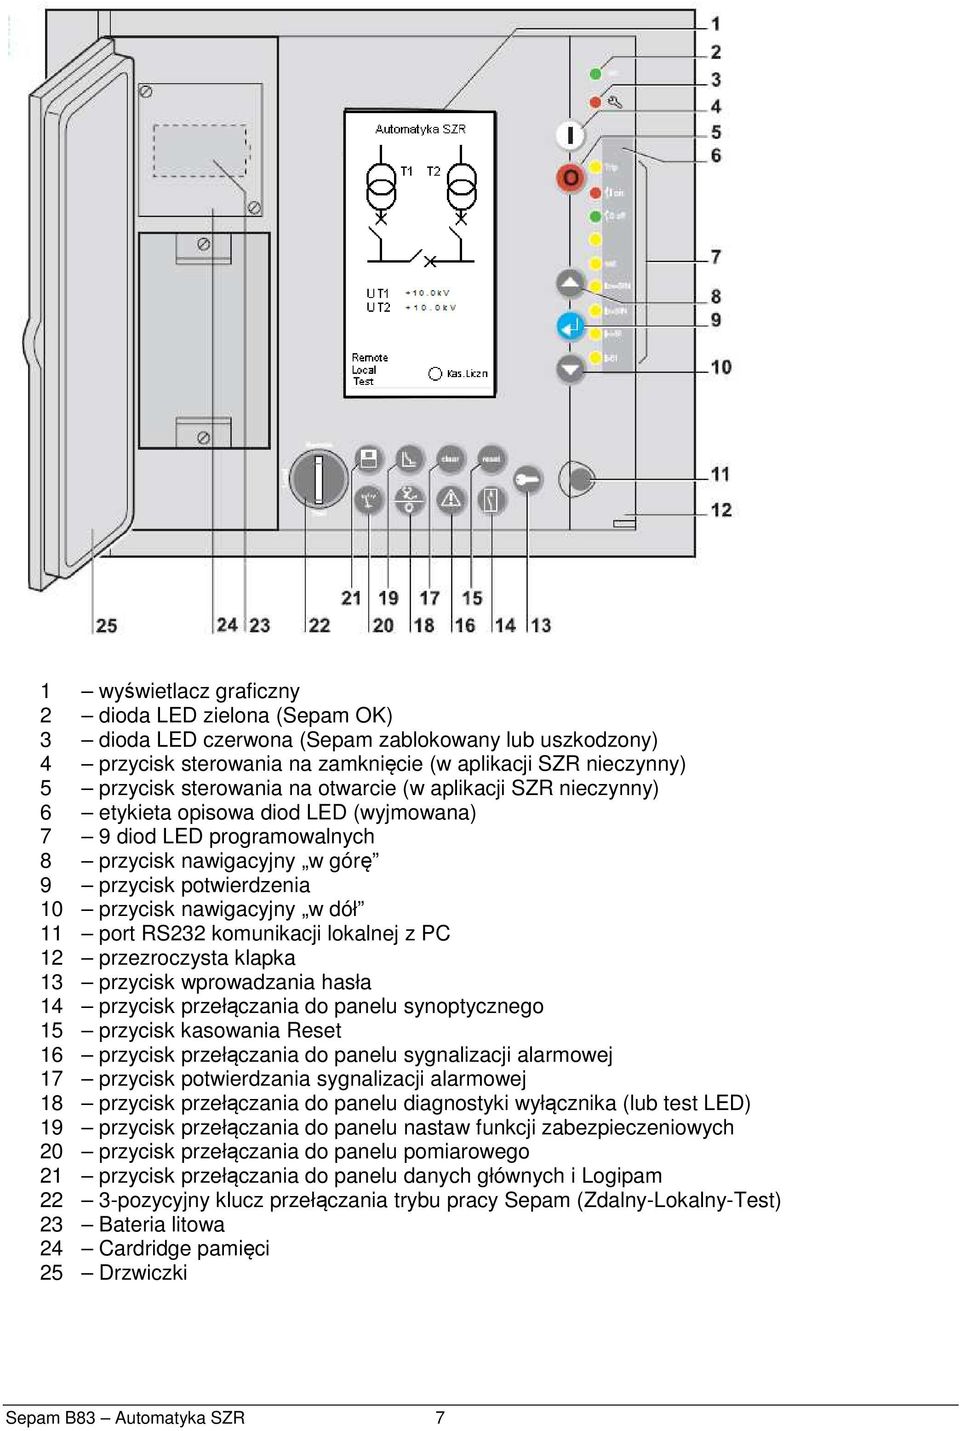 RS232 komunikacji lokalnej z PC 12 przezroczysta klapka 13 przycisk wprowadzania hasła 14 przycisk przełączania do panelu synoptycznego 15 przycisk kasowania Reset 16 przycisk przełączania do panelu